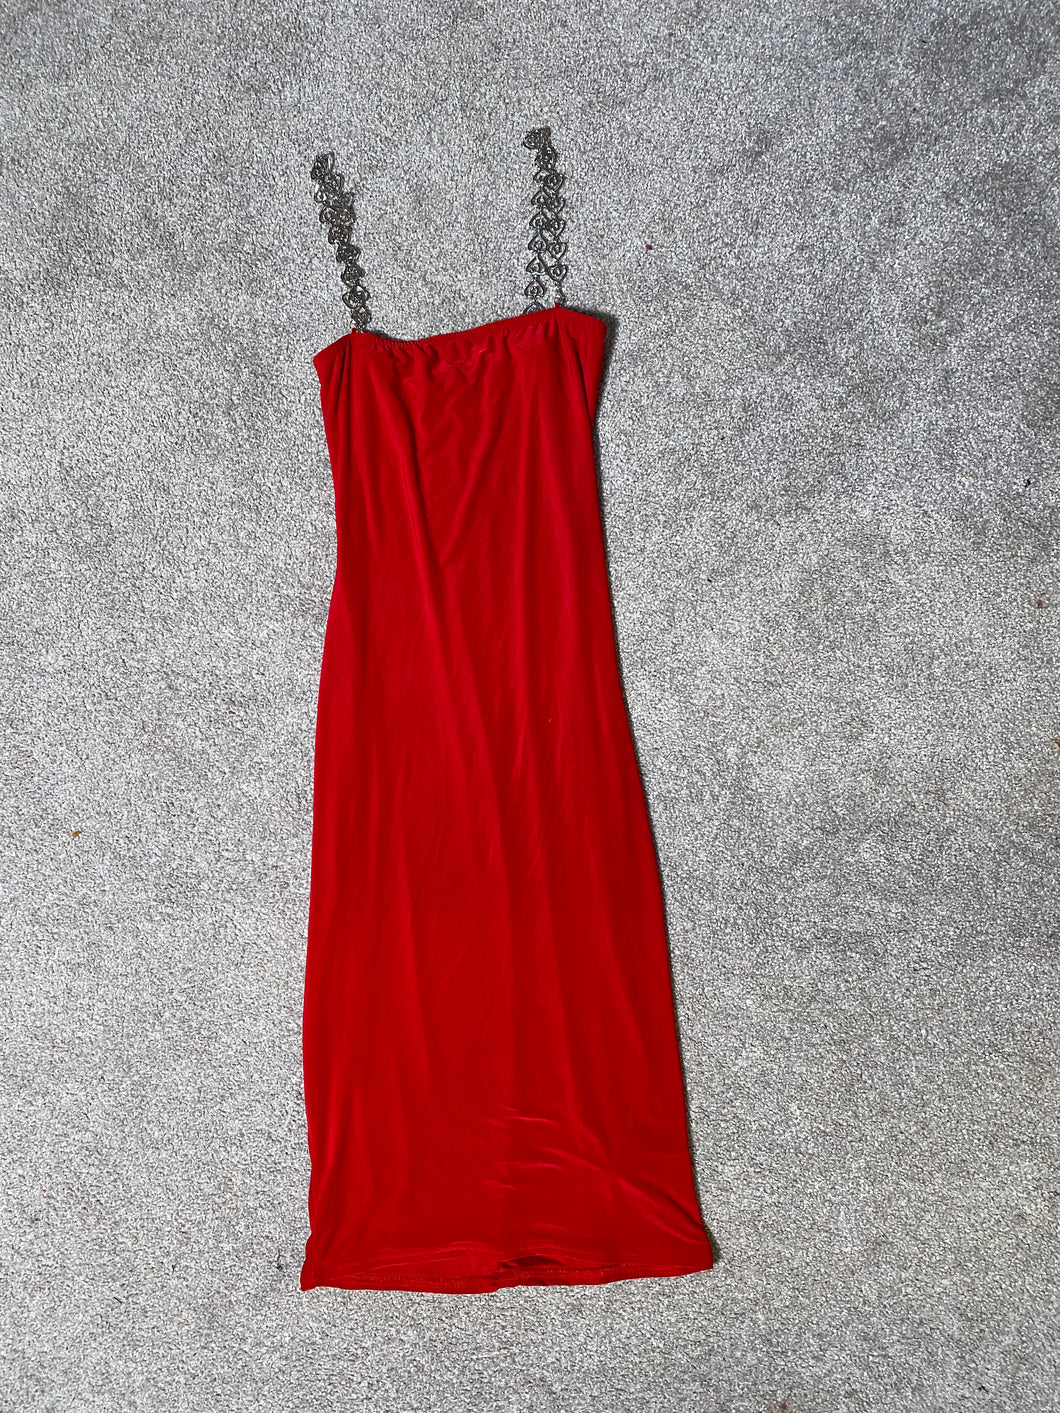 Red Dress from Boohoo x Kourtney Kardashian - Size 4